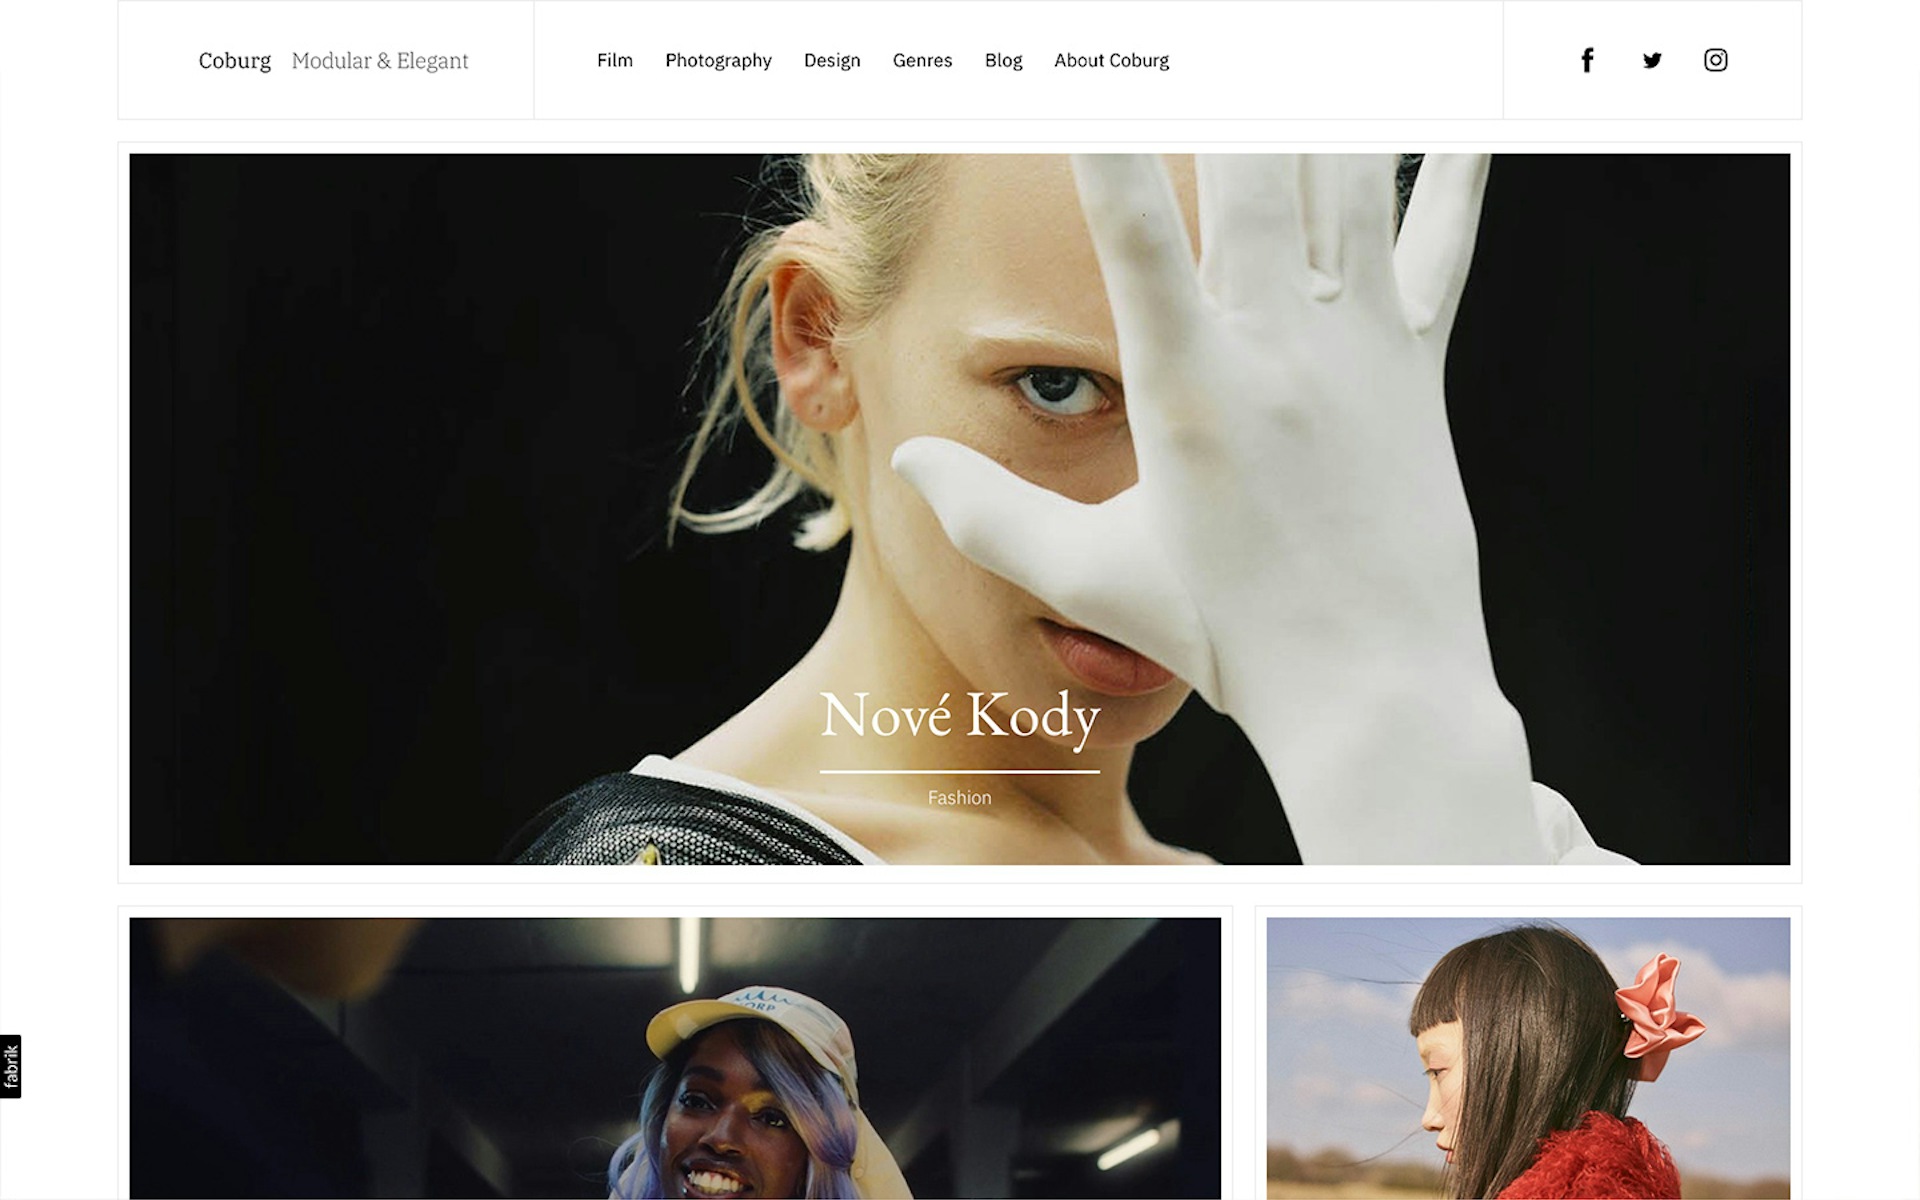 Coburg theme for Fabrik portfolio website